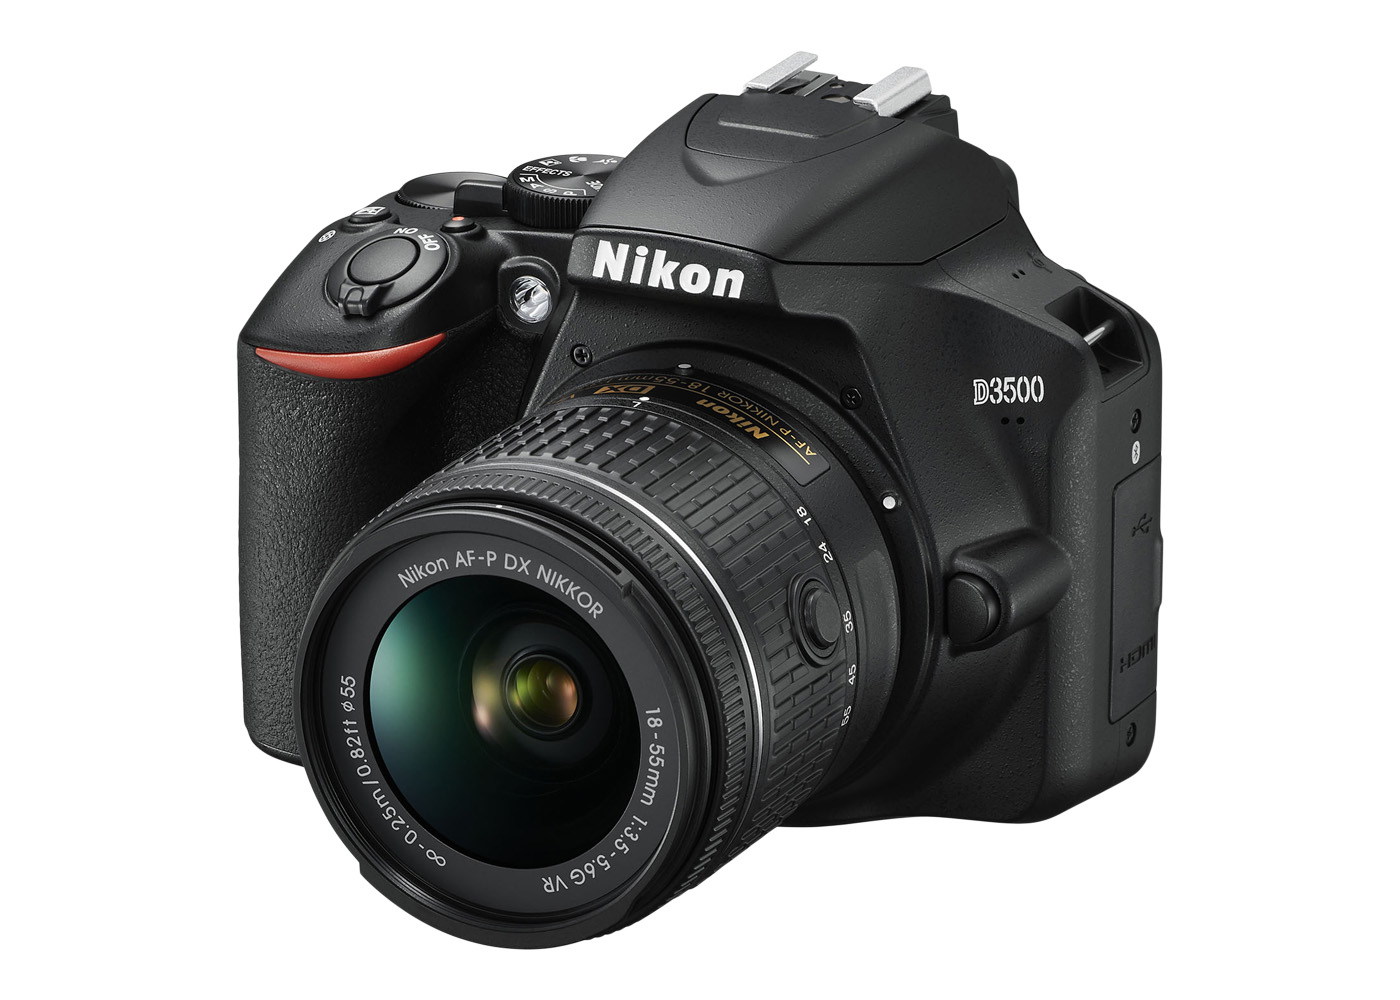 Nikon AF-P DX 18-55mm F/3.5-5.6G VR